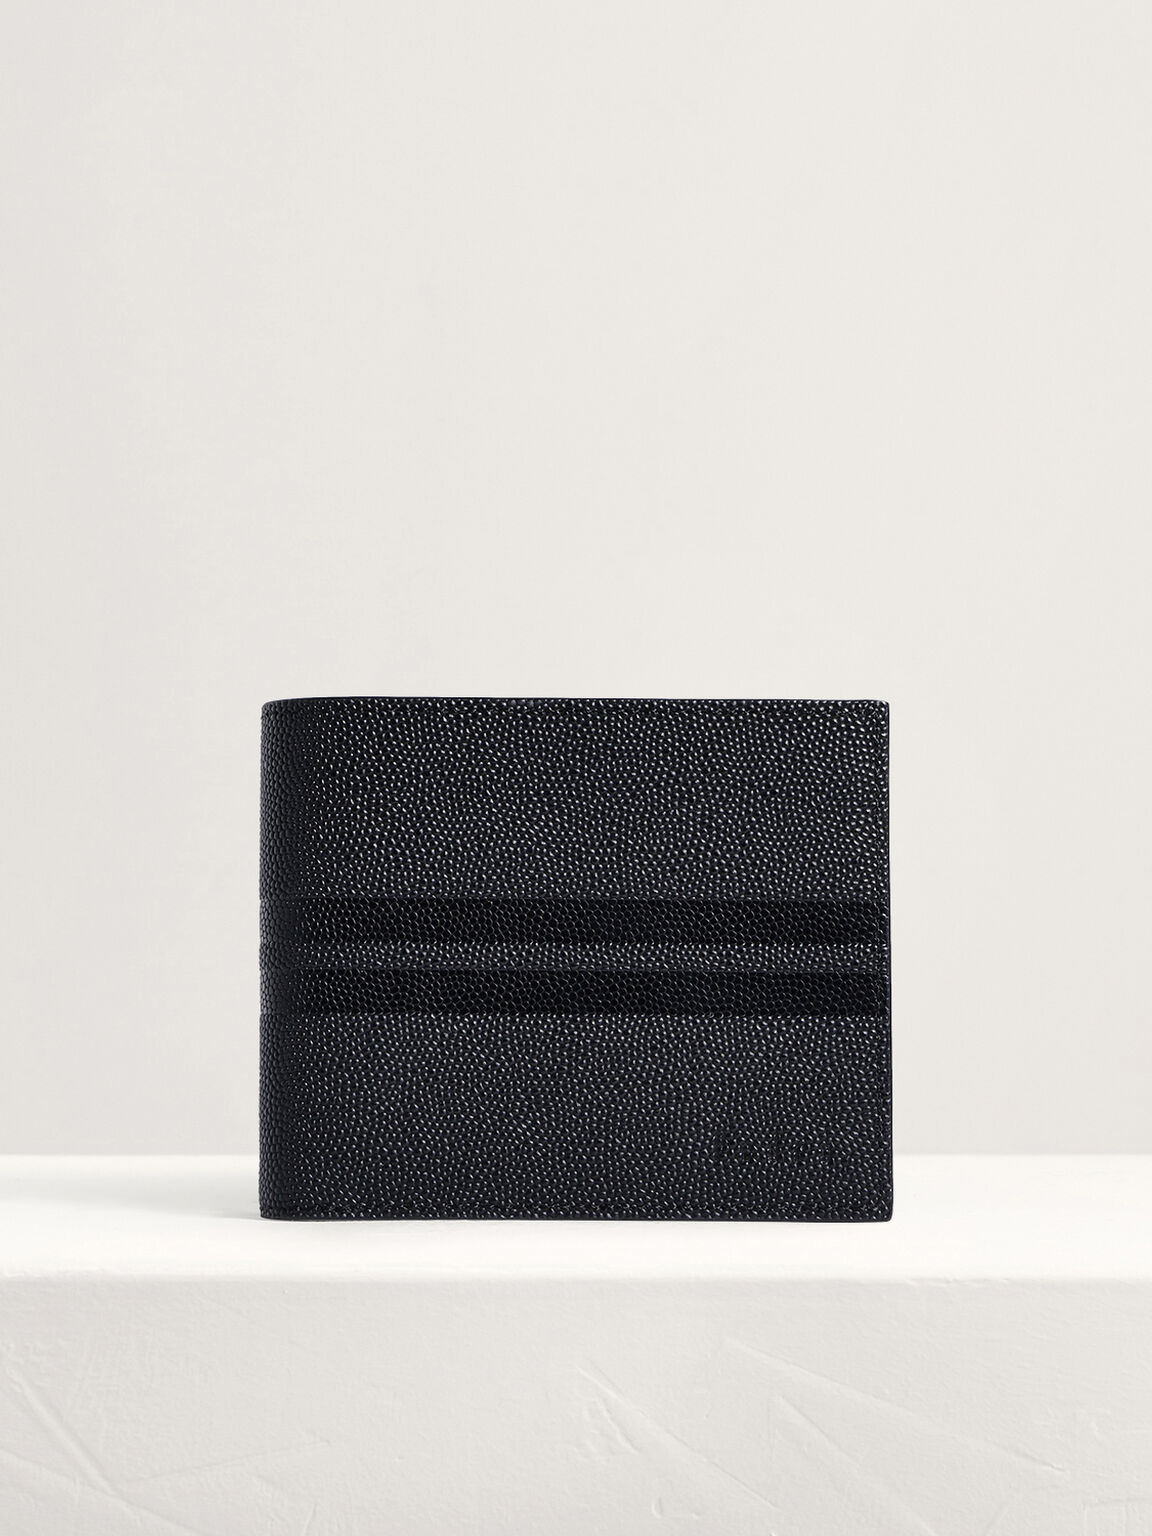 Striped Leather Bi-Fold Flip Wallet, Black